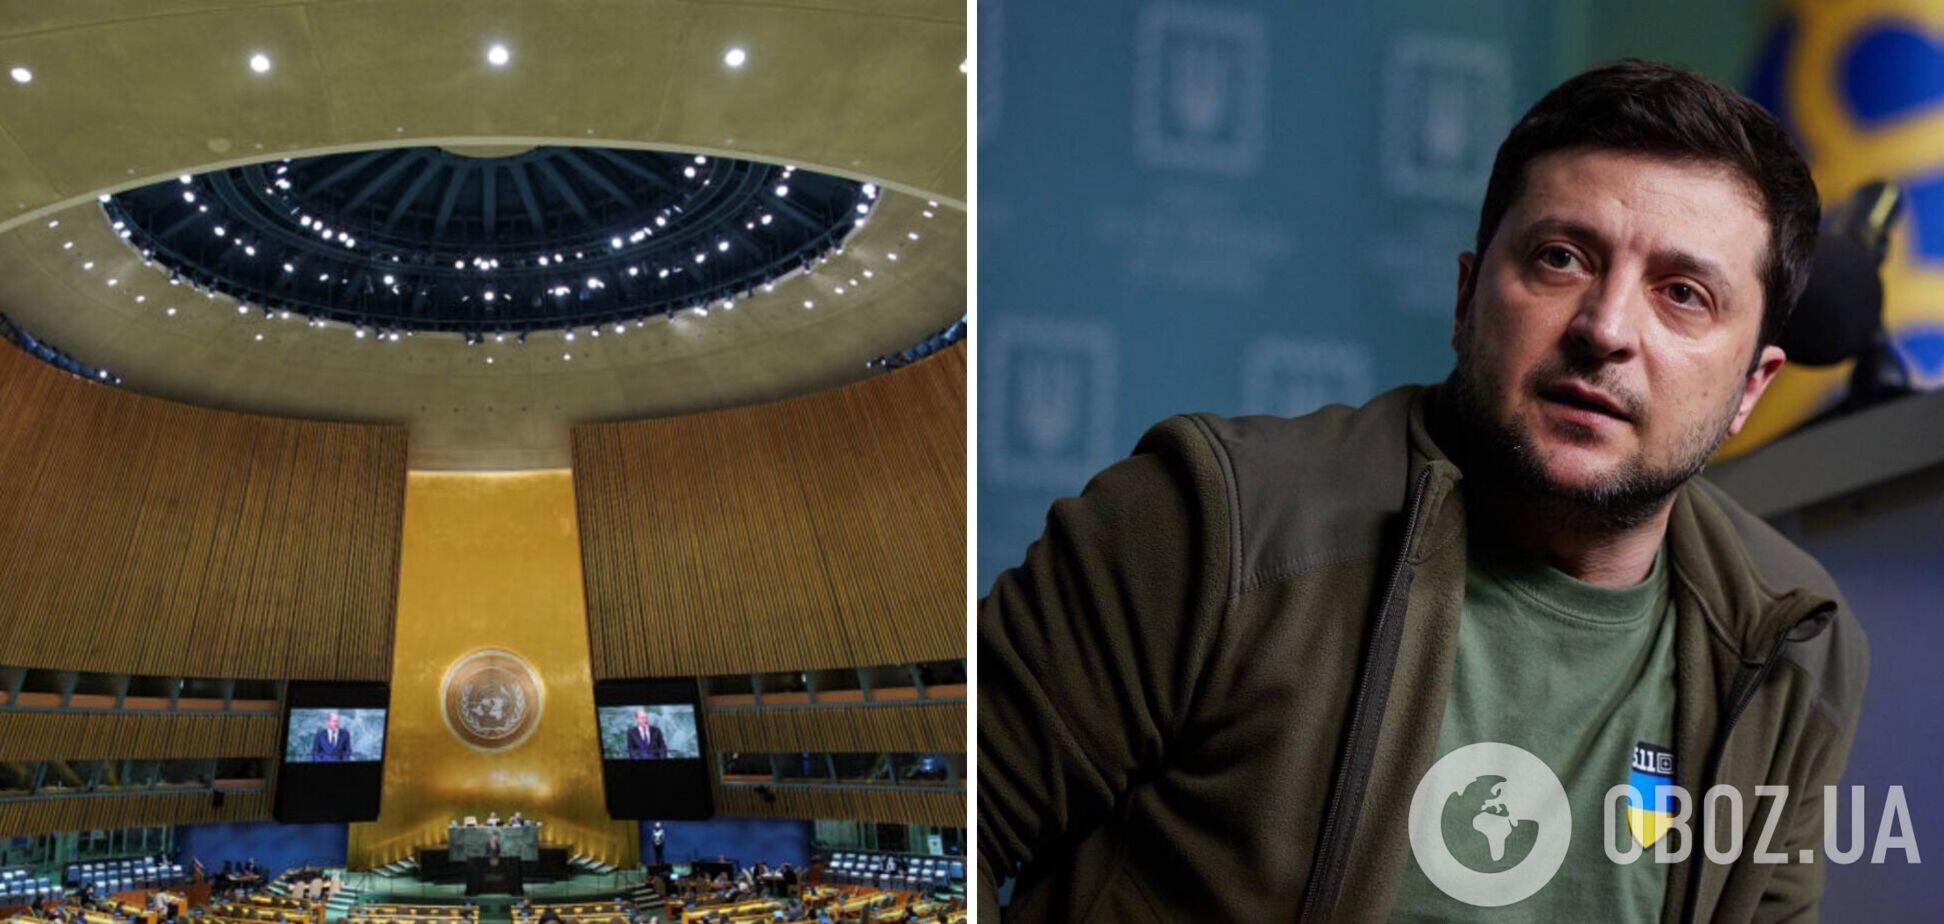 Рішення ще не ухвалено: в МЗС прокоментували повідомлення ЗМІ про участь Зеленського в Радбезі ООН